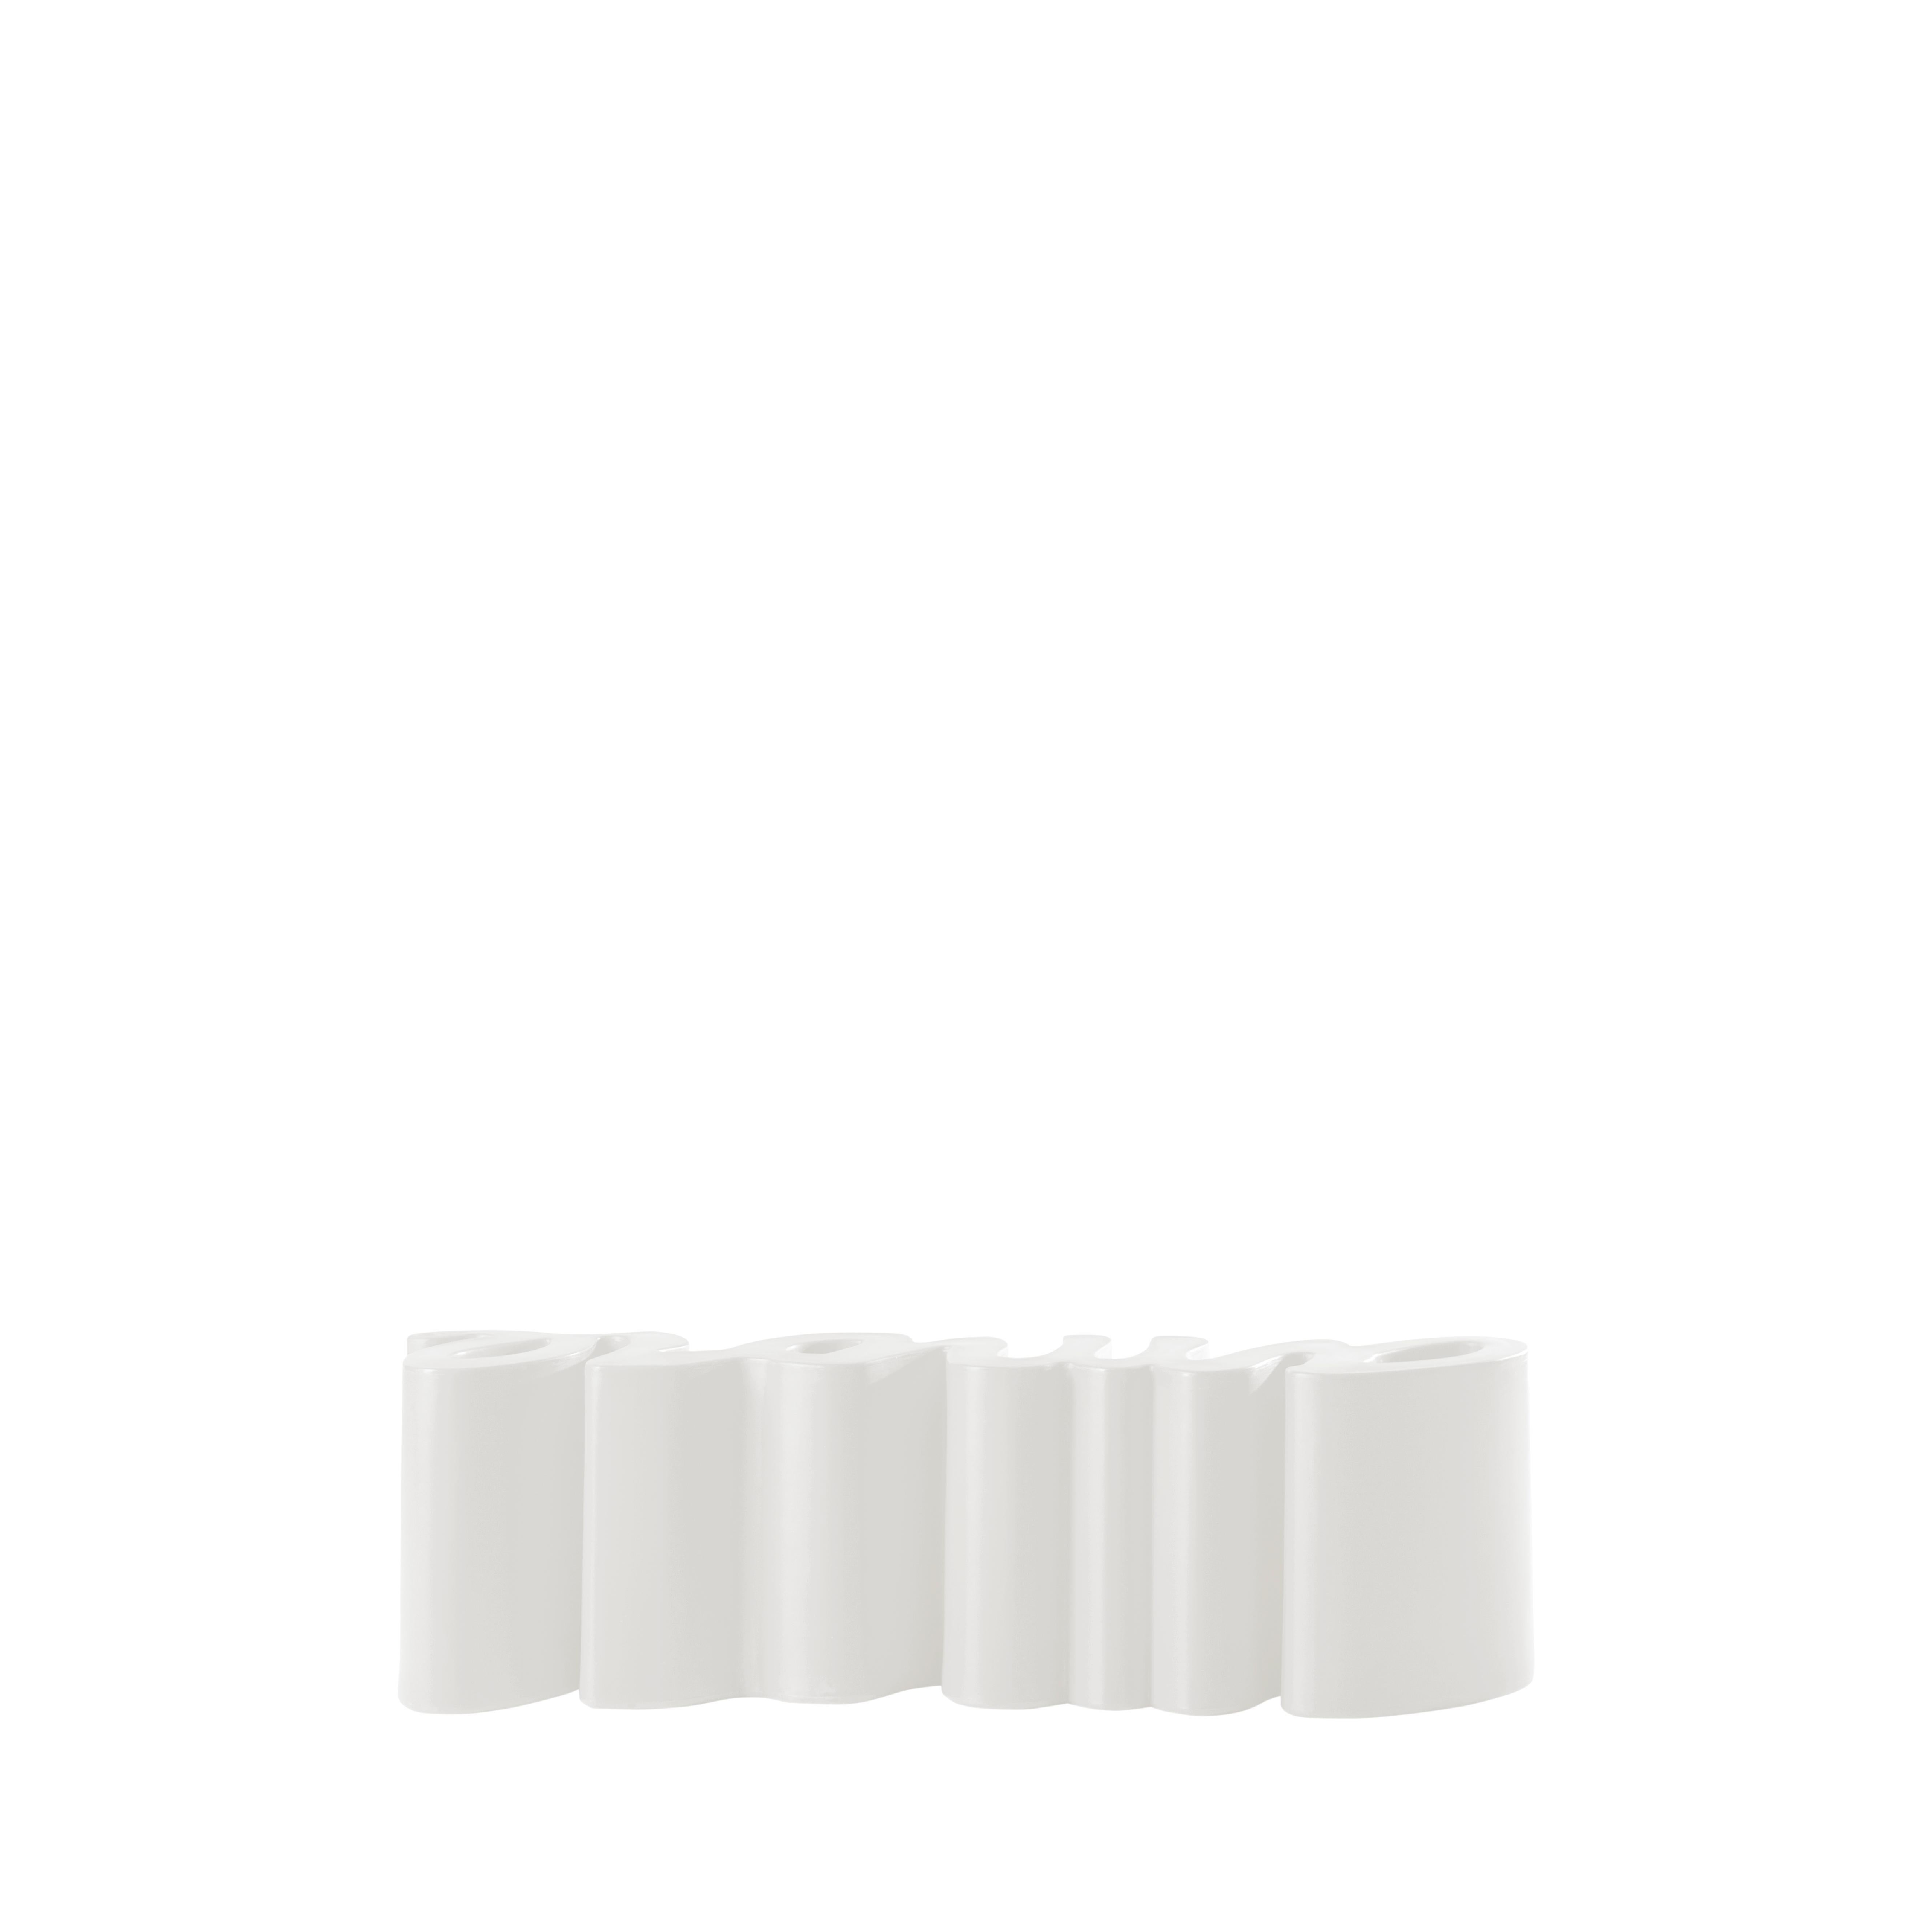 Milky White Amore Bank von Giò Colonna Romano
Abmessungen: T 38 x B 145 x H 45 cm.
MATERIALEN: Polyethylen.
Gewicht: 18 kg.

Erhältlich in einer Standardversion und einer lackierten Version. Preise können abweichen. Erhältlich in verschiedenen